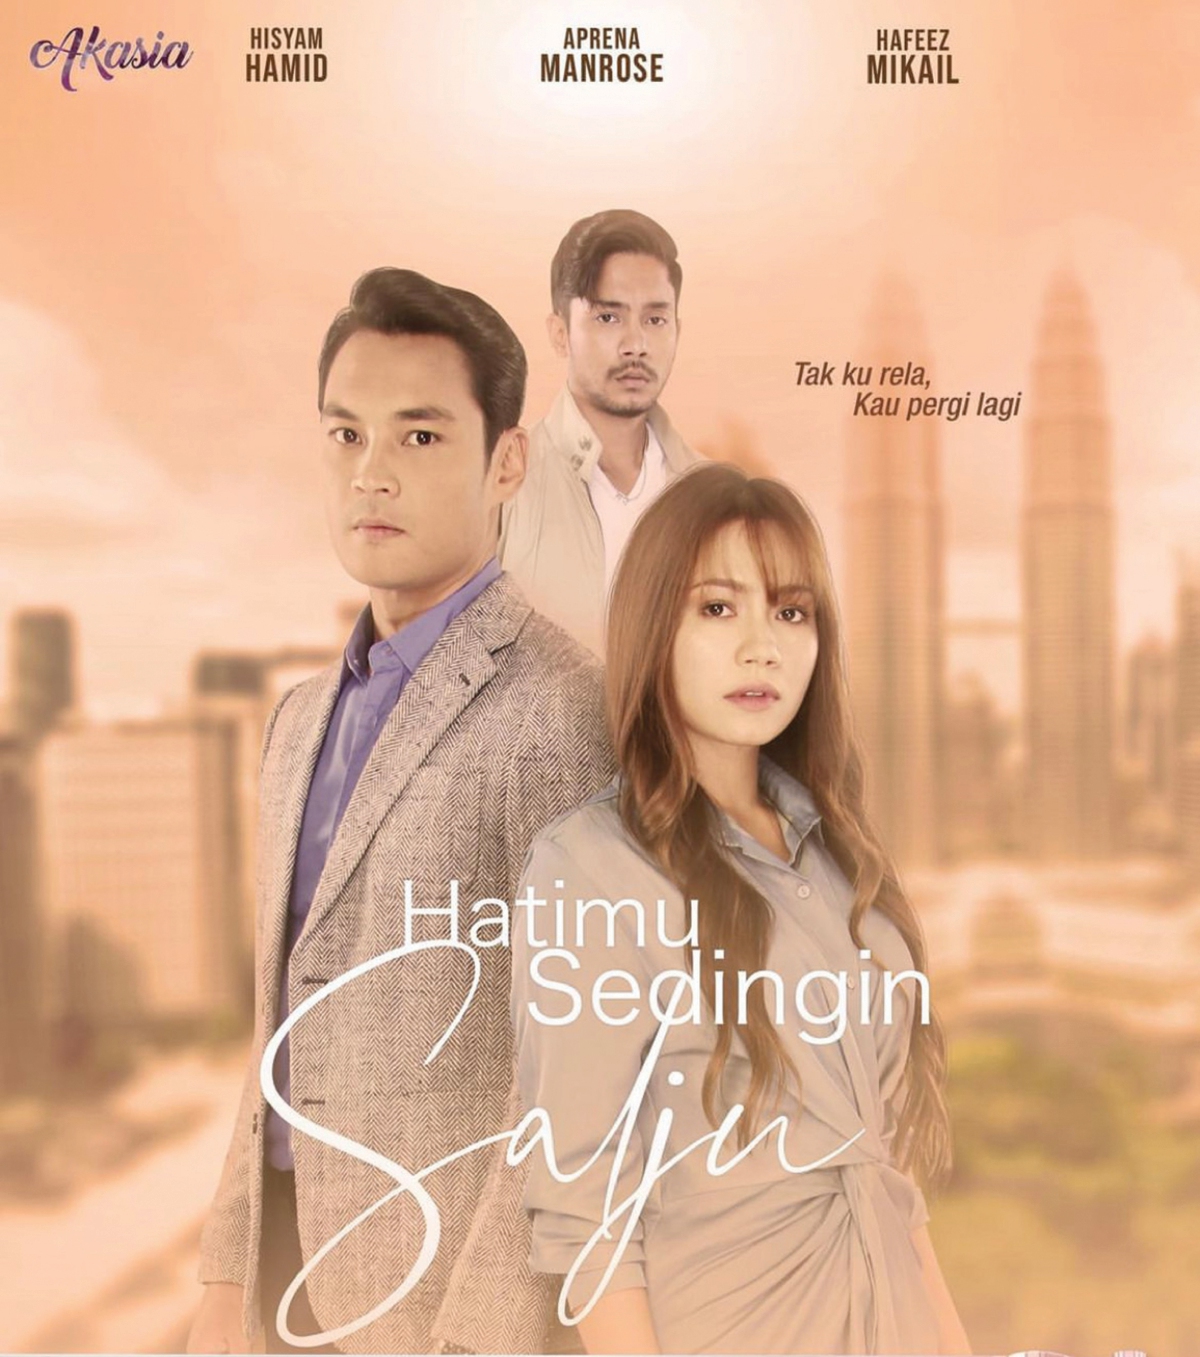 HAFEEZ kini membintangi drama Hatimu Sedingin Salju yang kini ditayangkan di TV3.